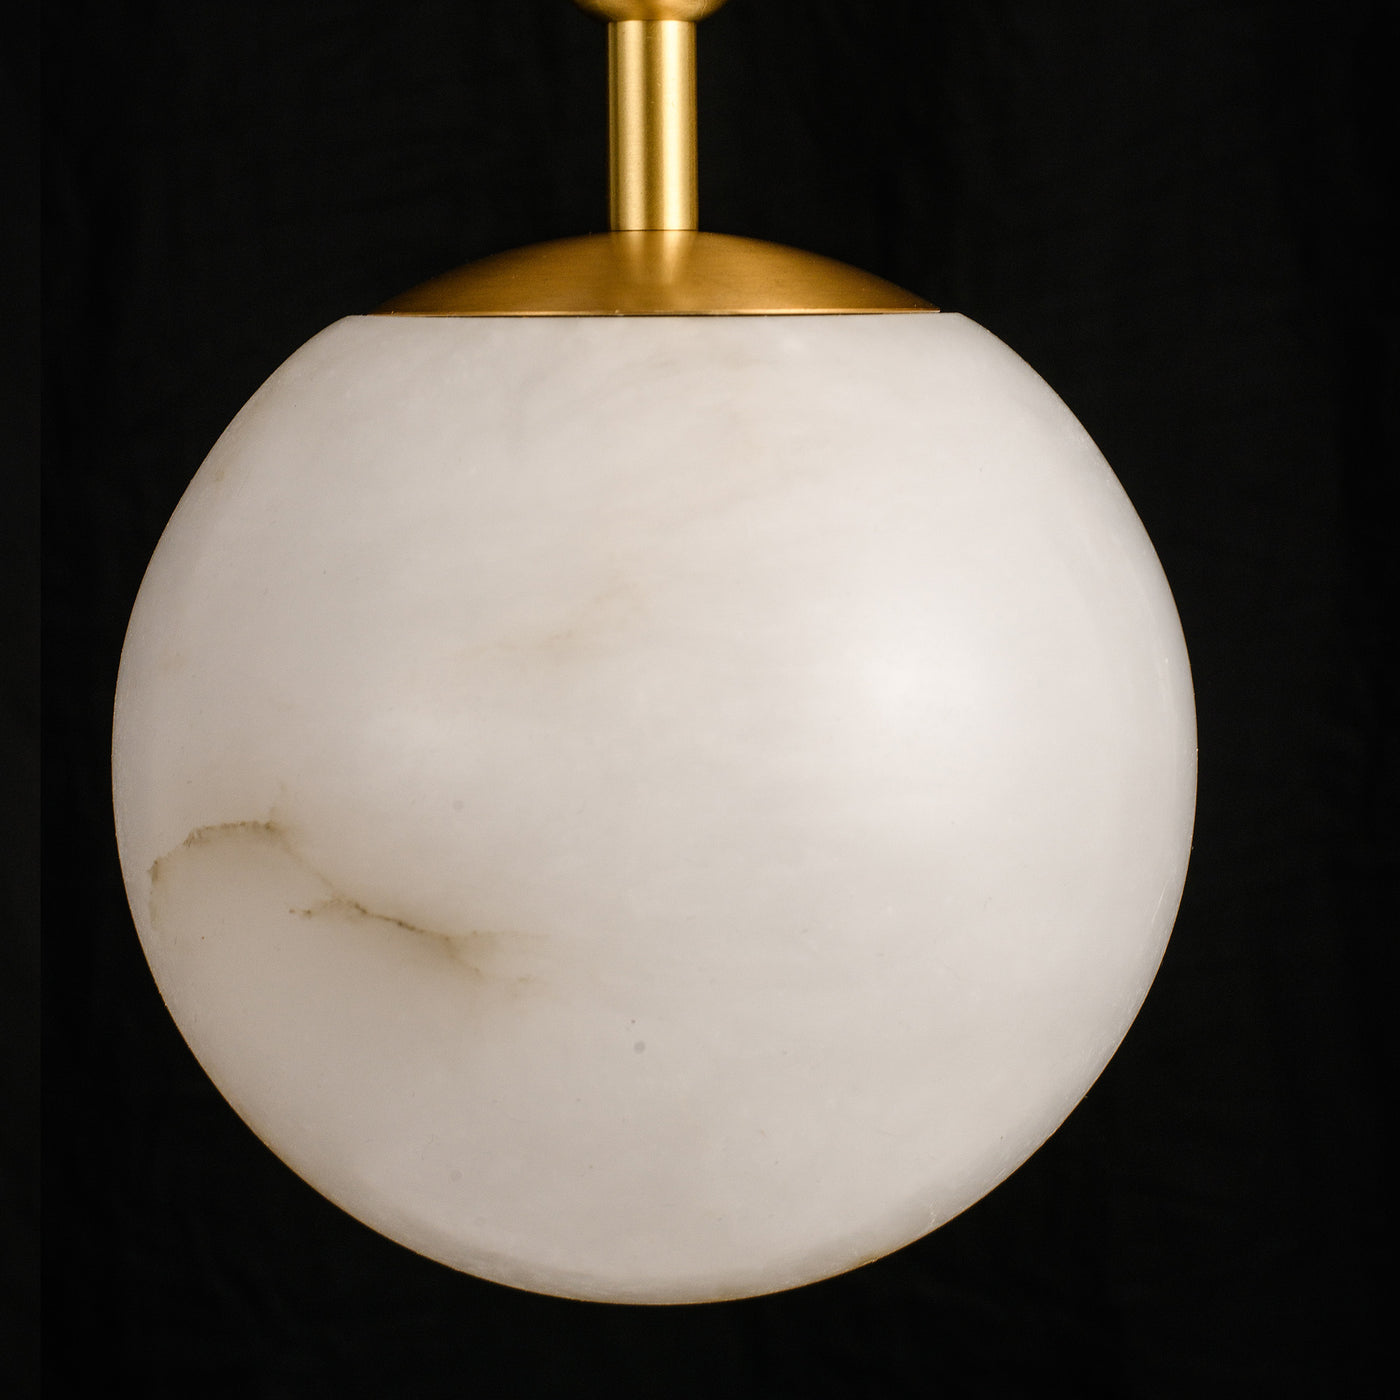 Modern marble pendant lighting